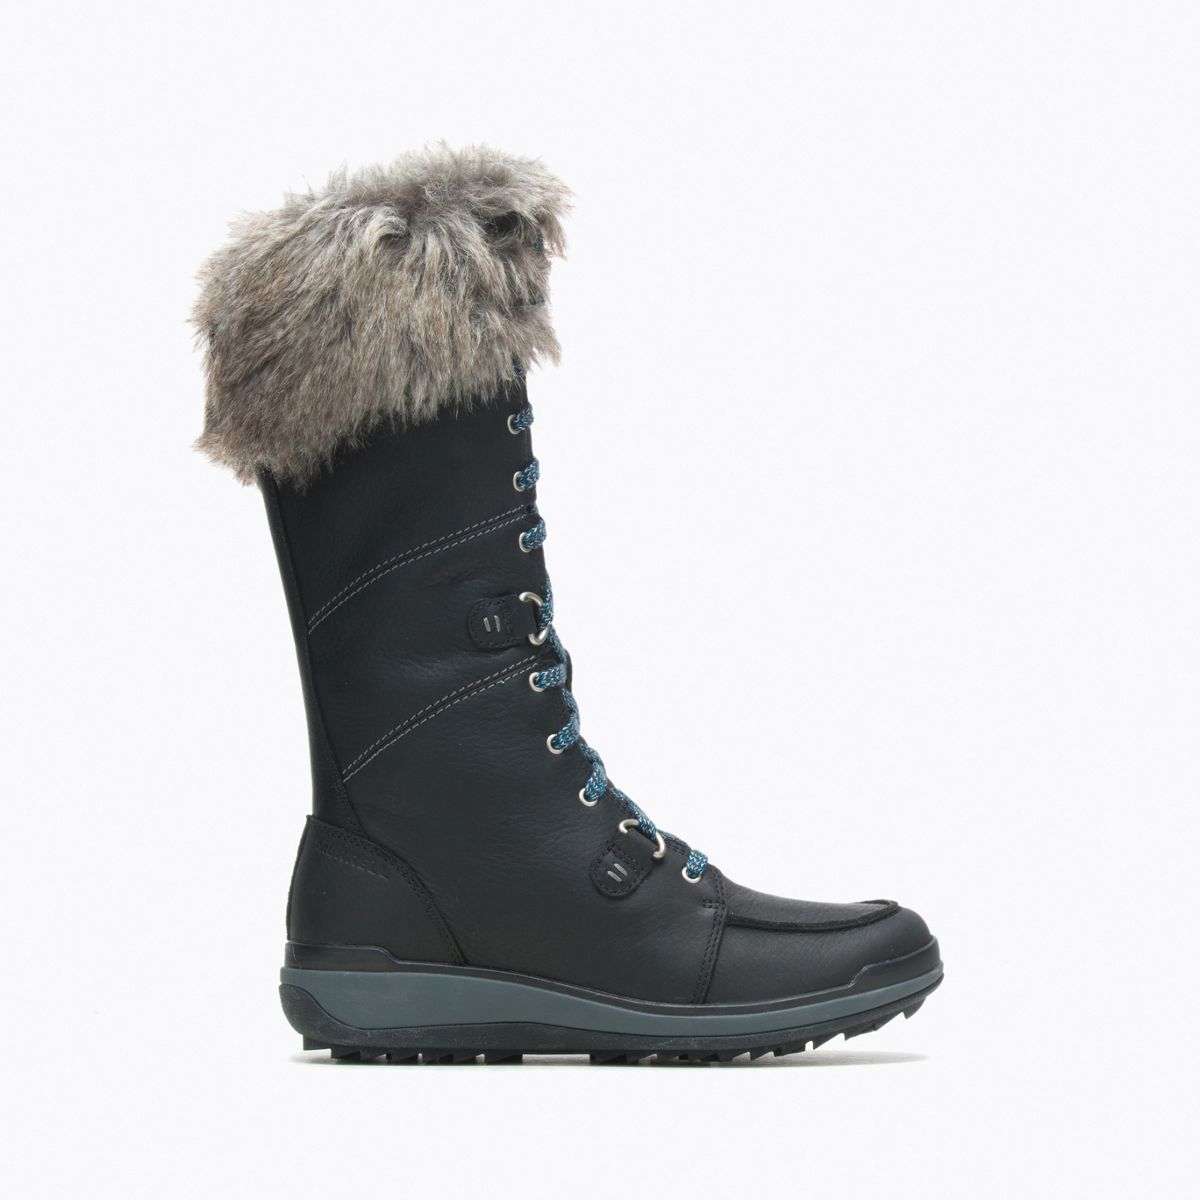 Merrell womens Winter Boots